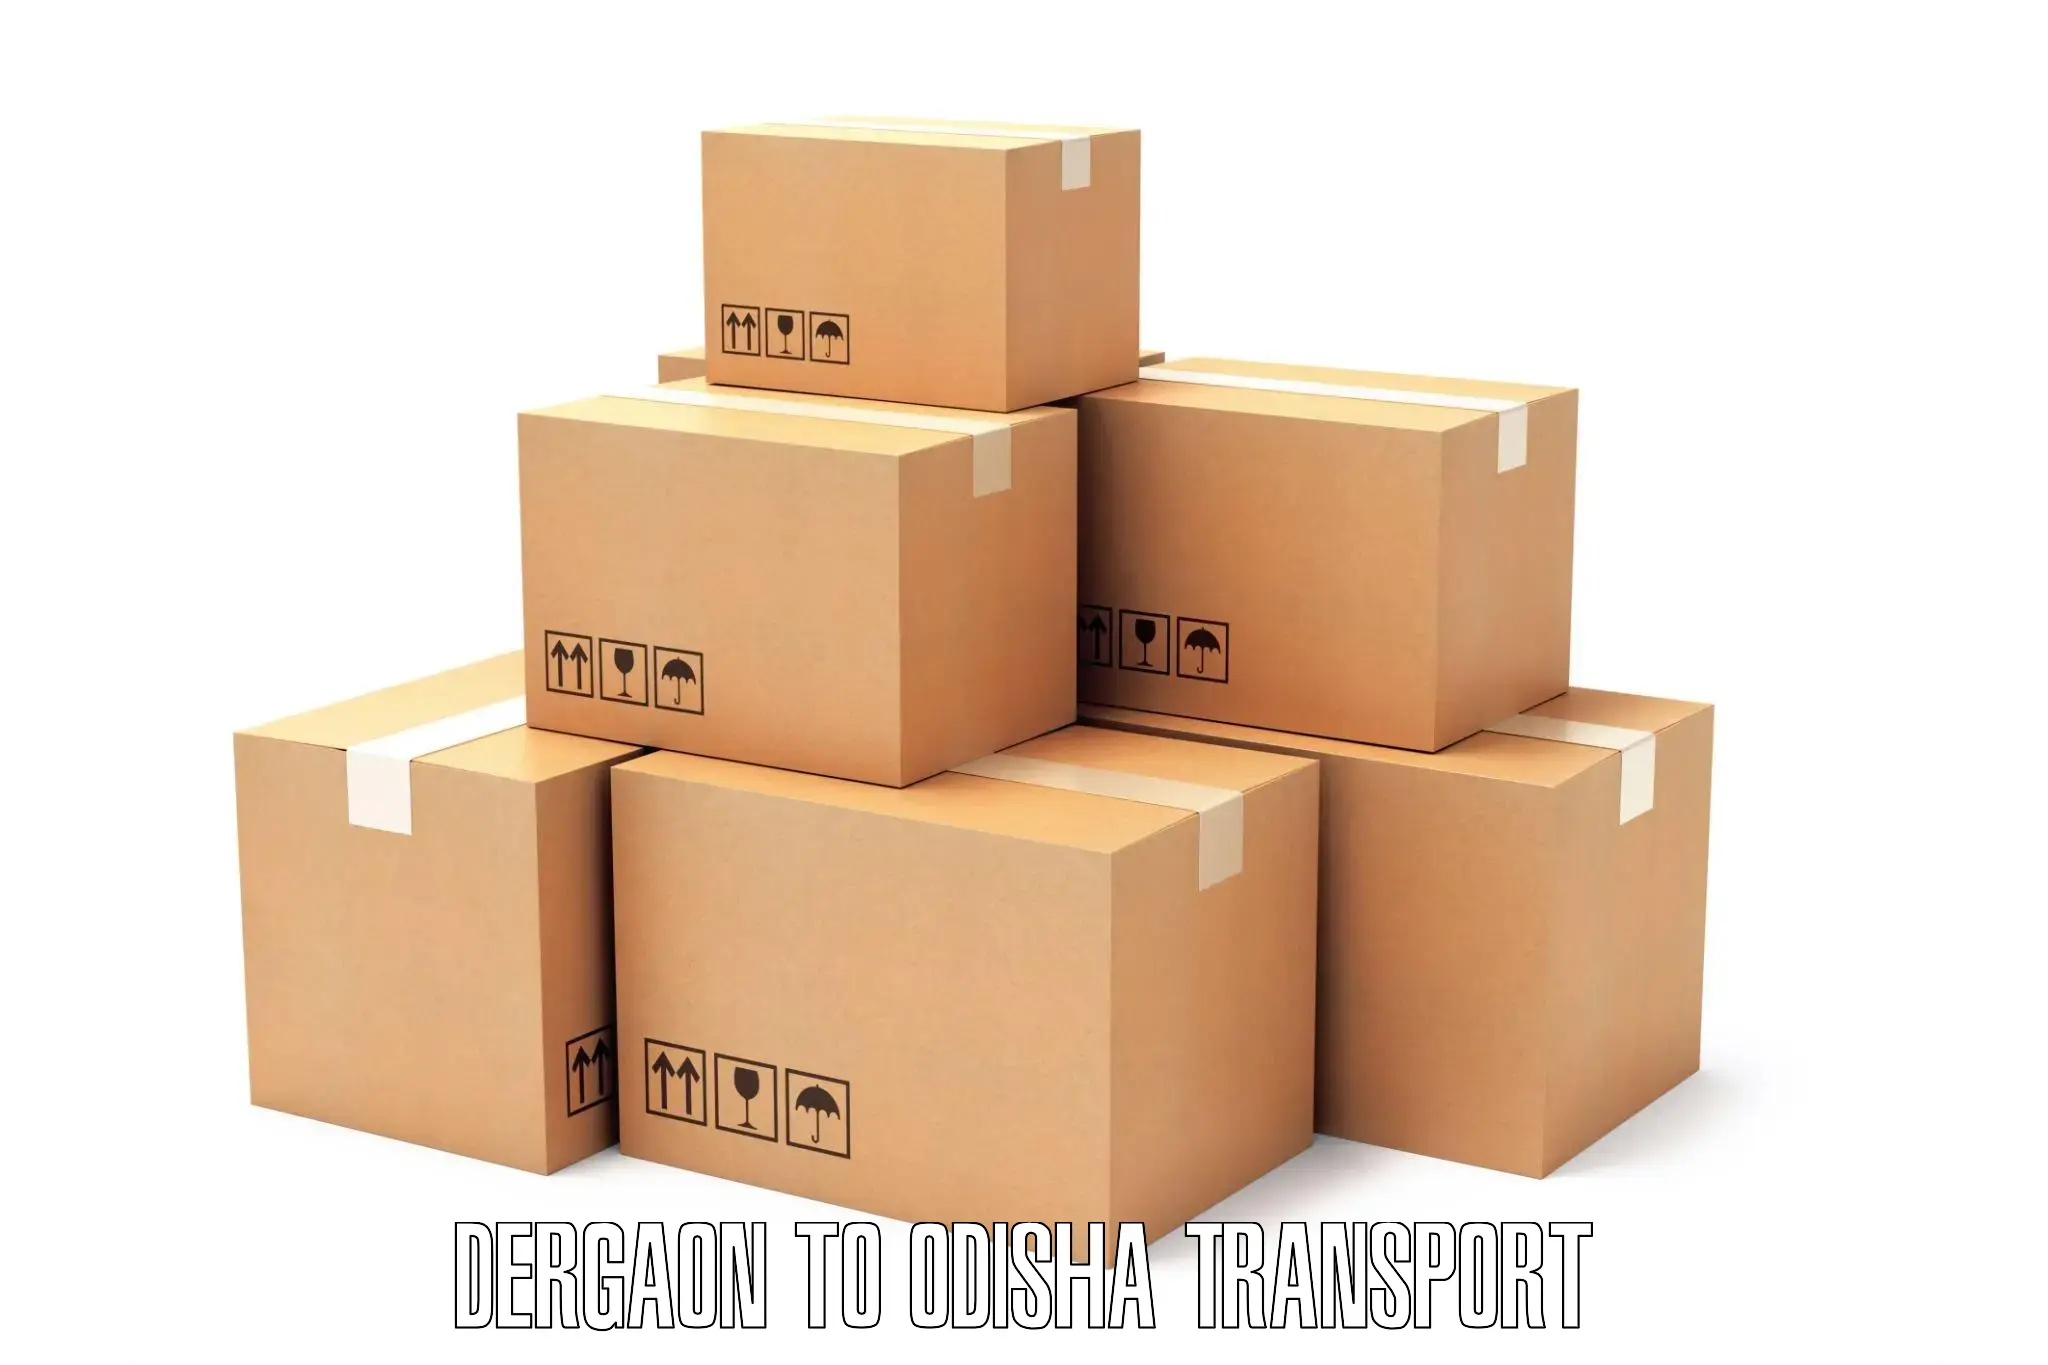 Vehicle parcel service Dergaon to Adaspur